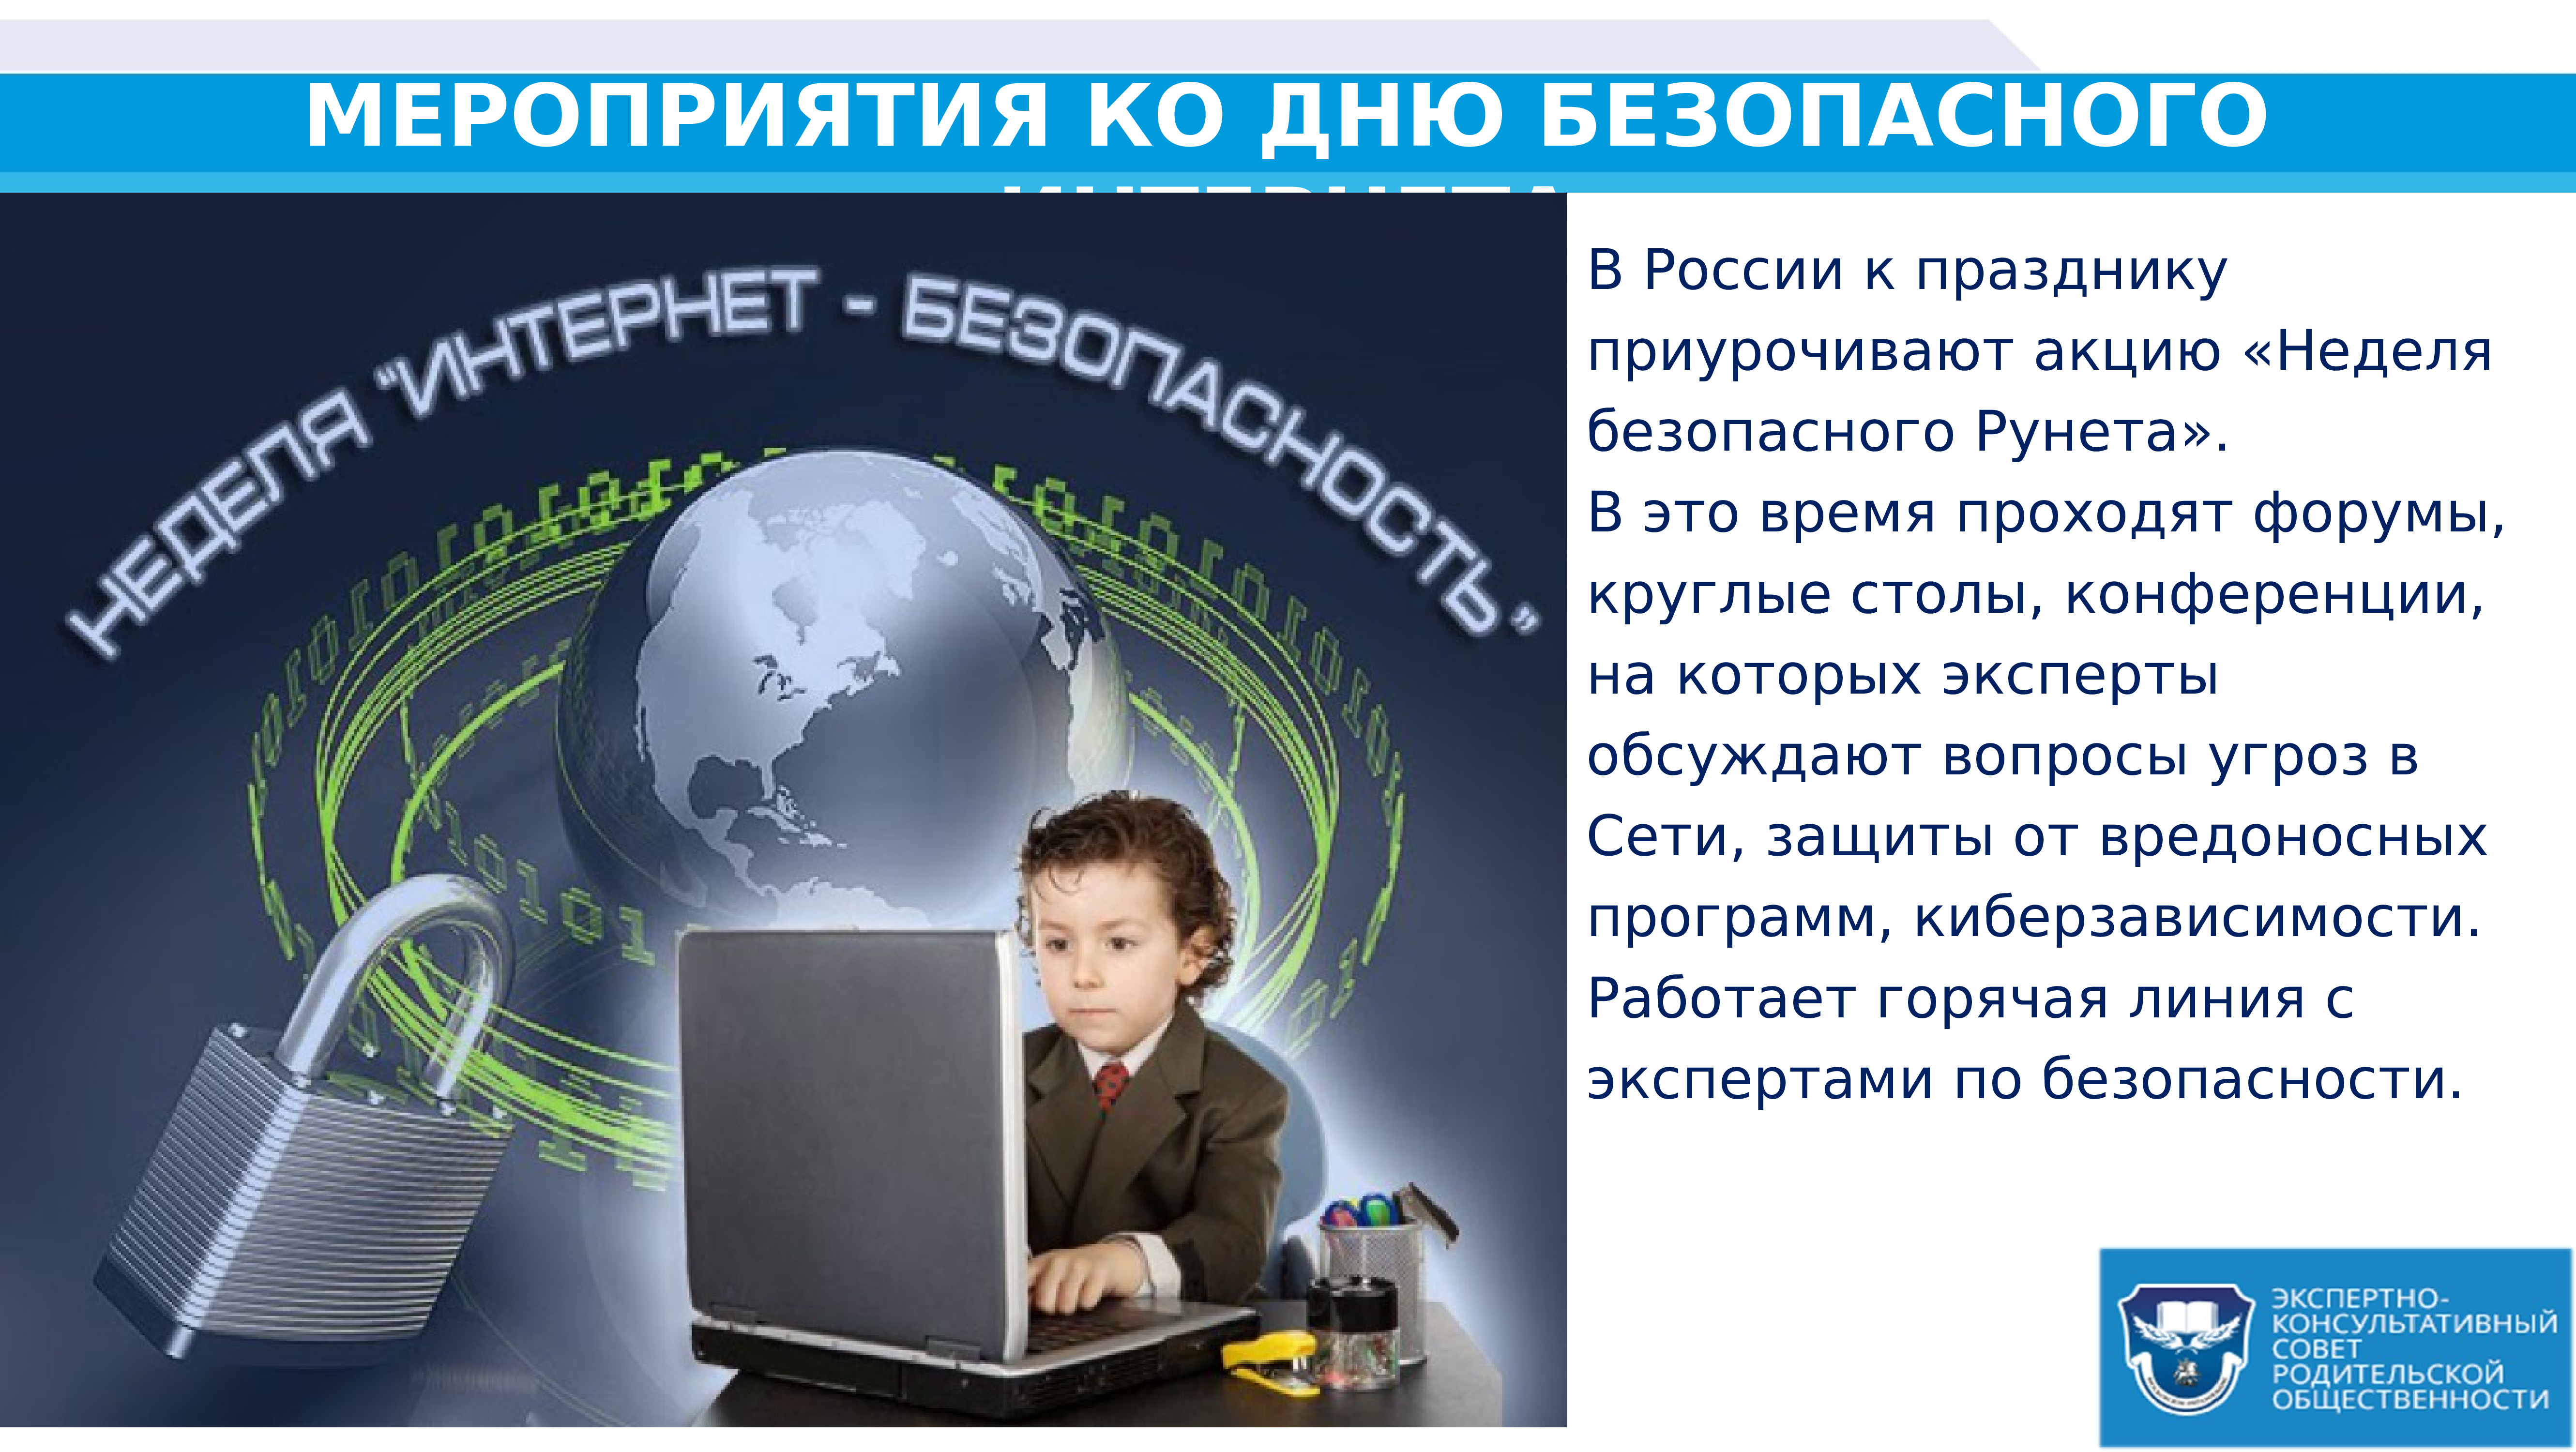 Интернет 63. День безопасности в интернете. Всемирный день безопасности интернета. Безопасный интернет презентация. День безопасного интернета в России.